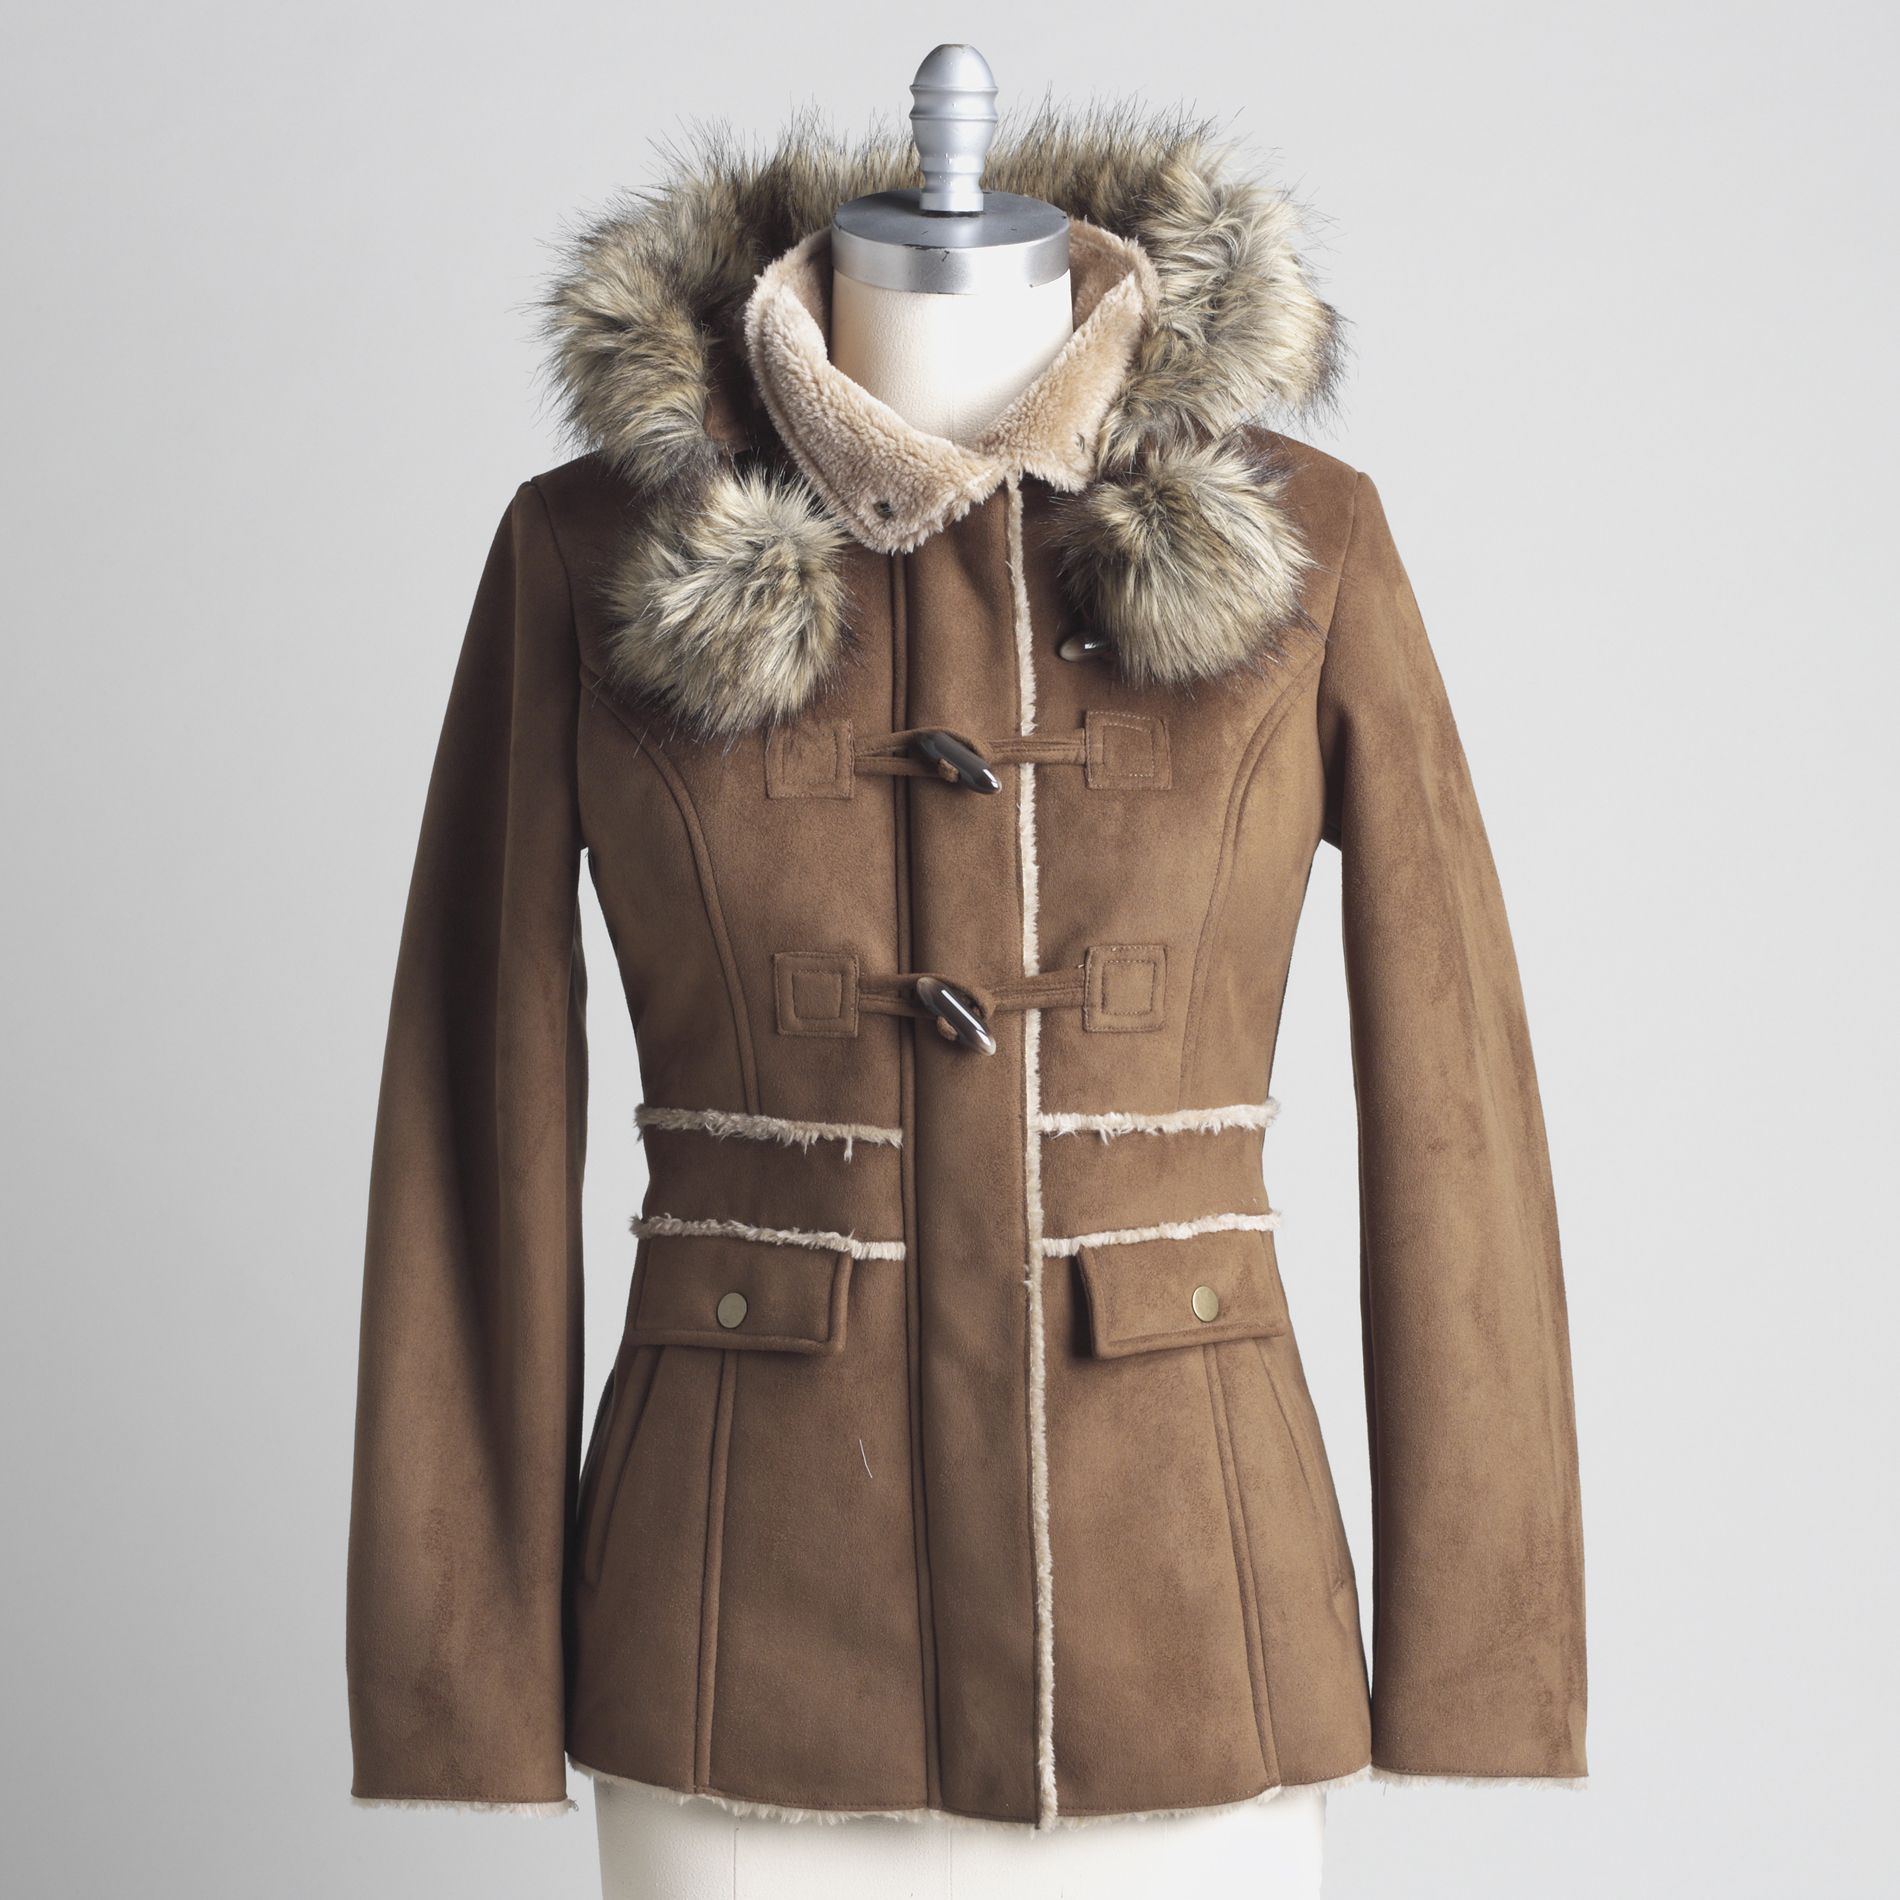 Braetan Women's Hooded Faux-Fur Lined Coat